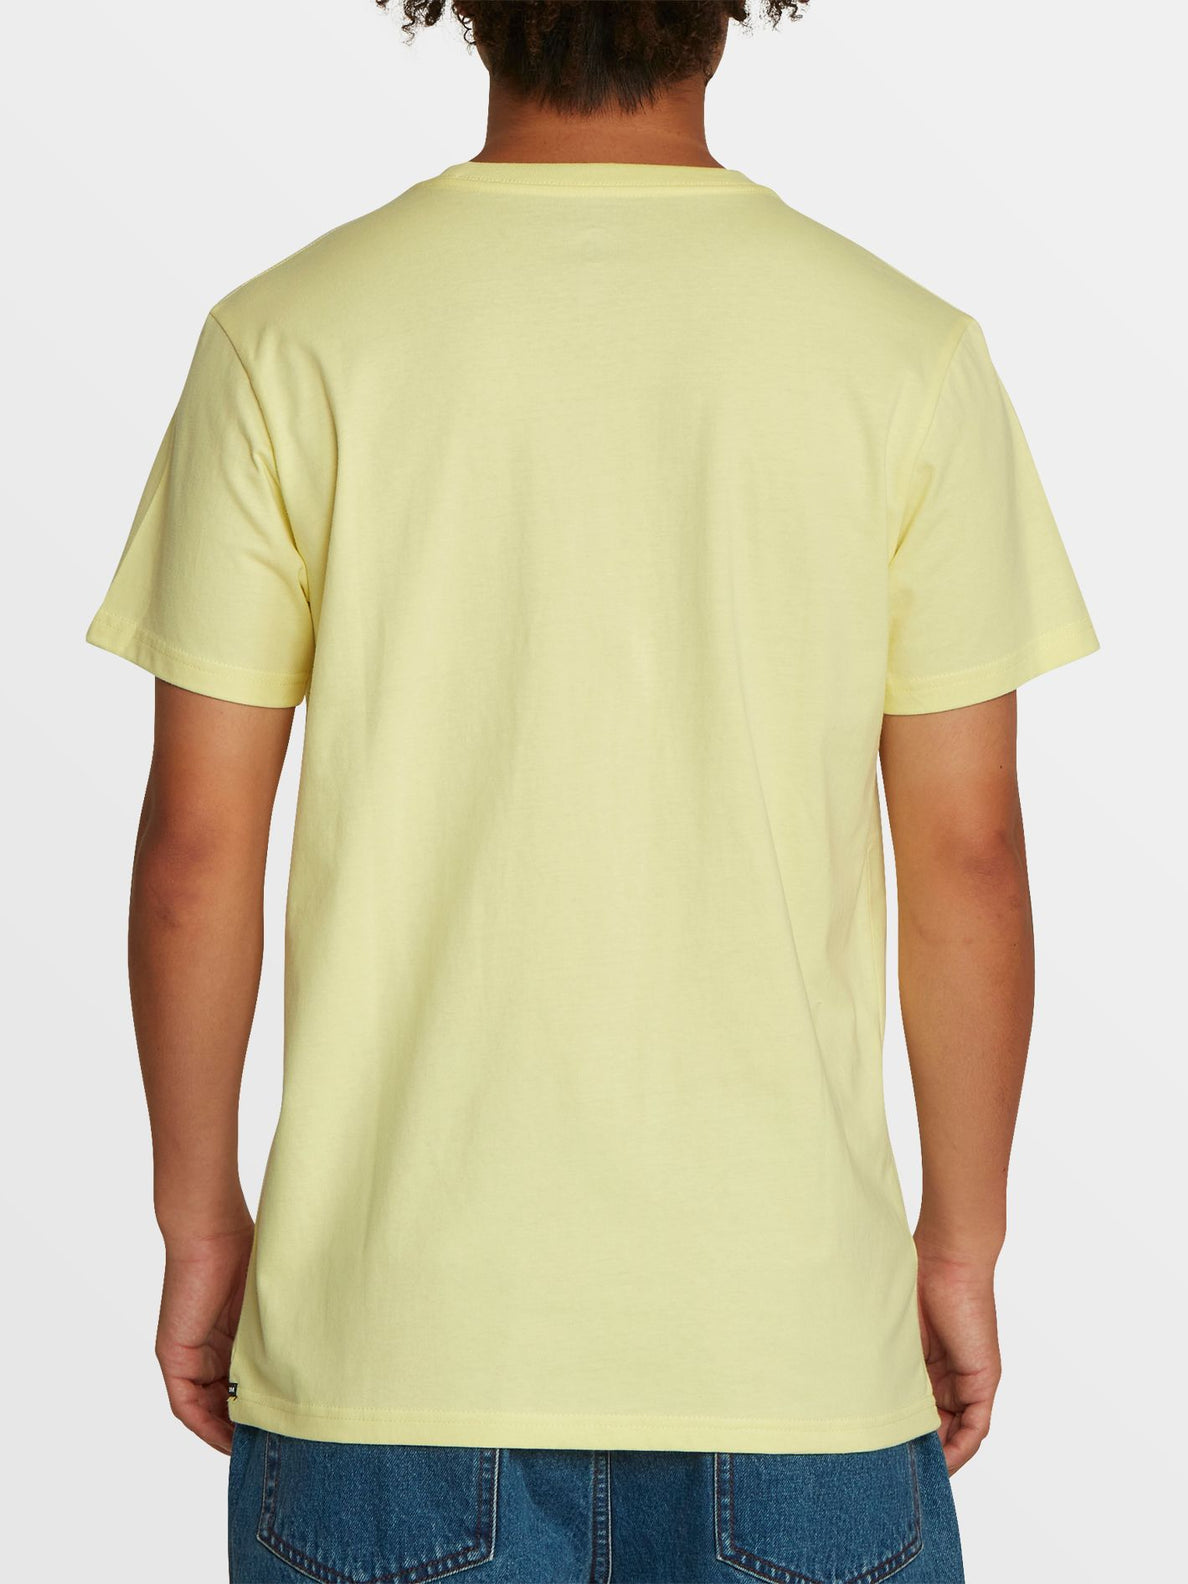 Dedliner Short Sleeve Tee - Glimmer Yellow